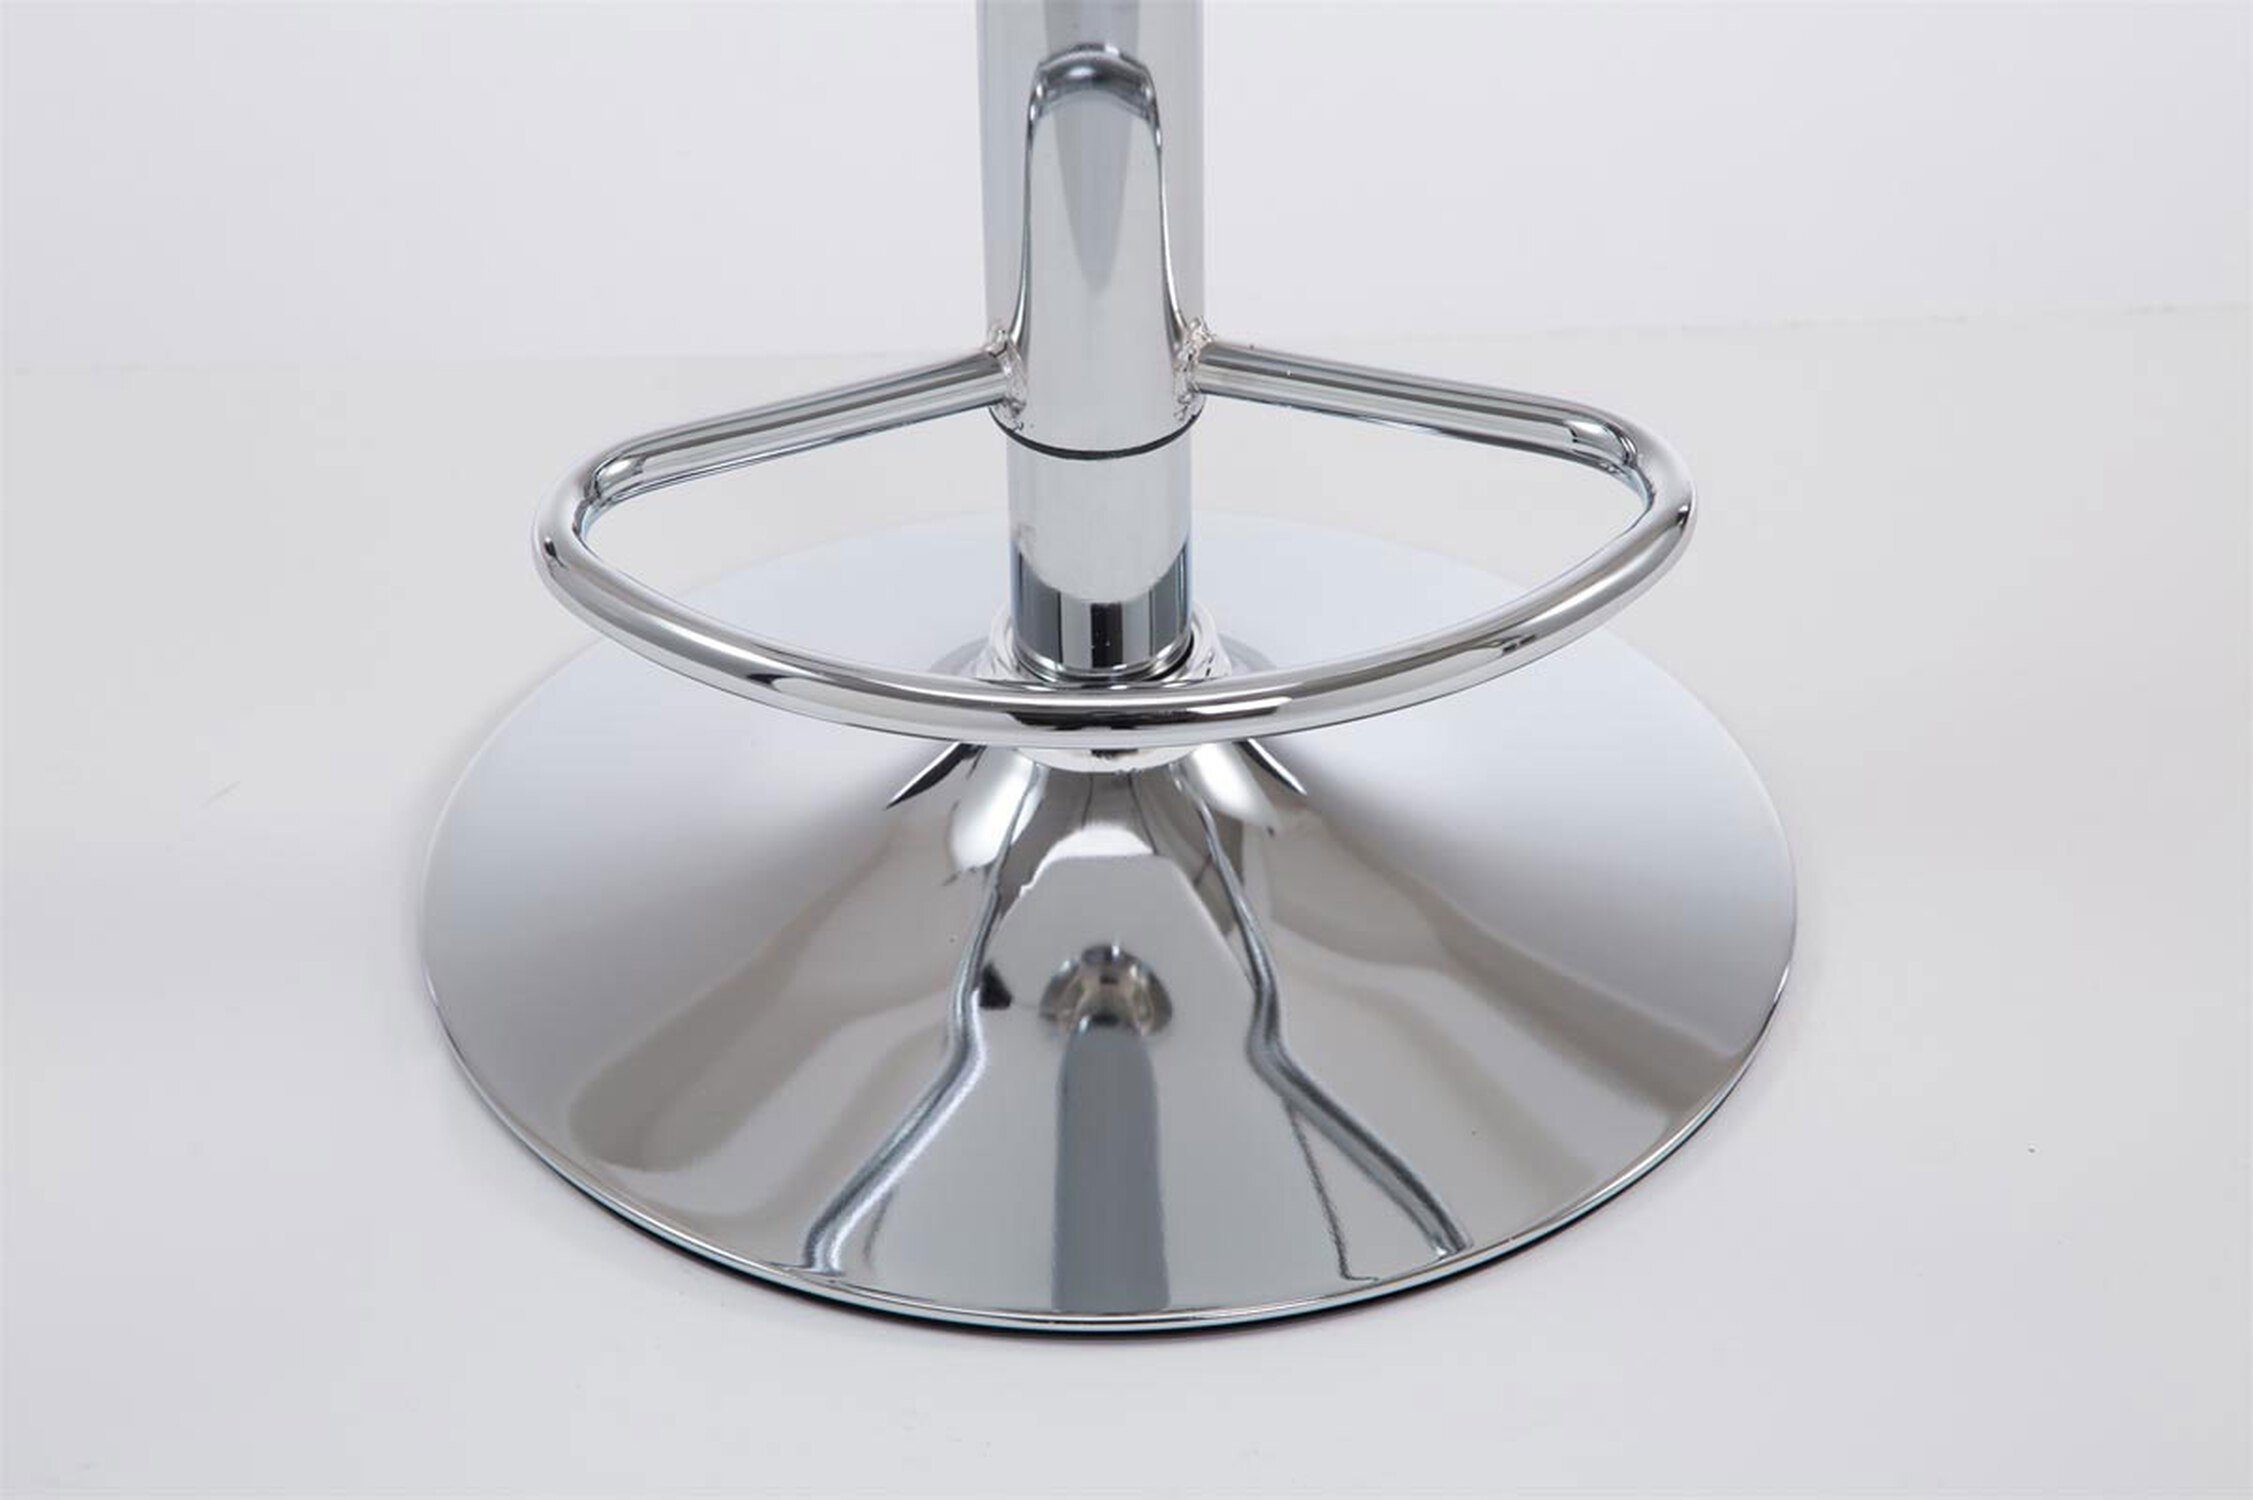 Las-Palmas Barhocker & Grün - Kunstleder Metall Gestell: TPFLiving 360° - Küche), Sitzfläche: - hoher höhenverstellbar - chrom Theke drehbar Hocker Rückenlehne (mit für